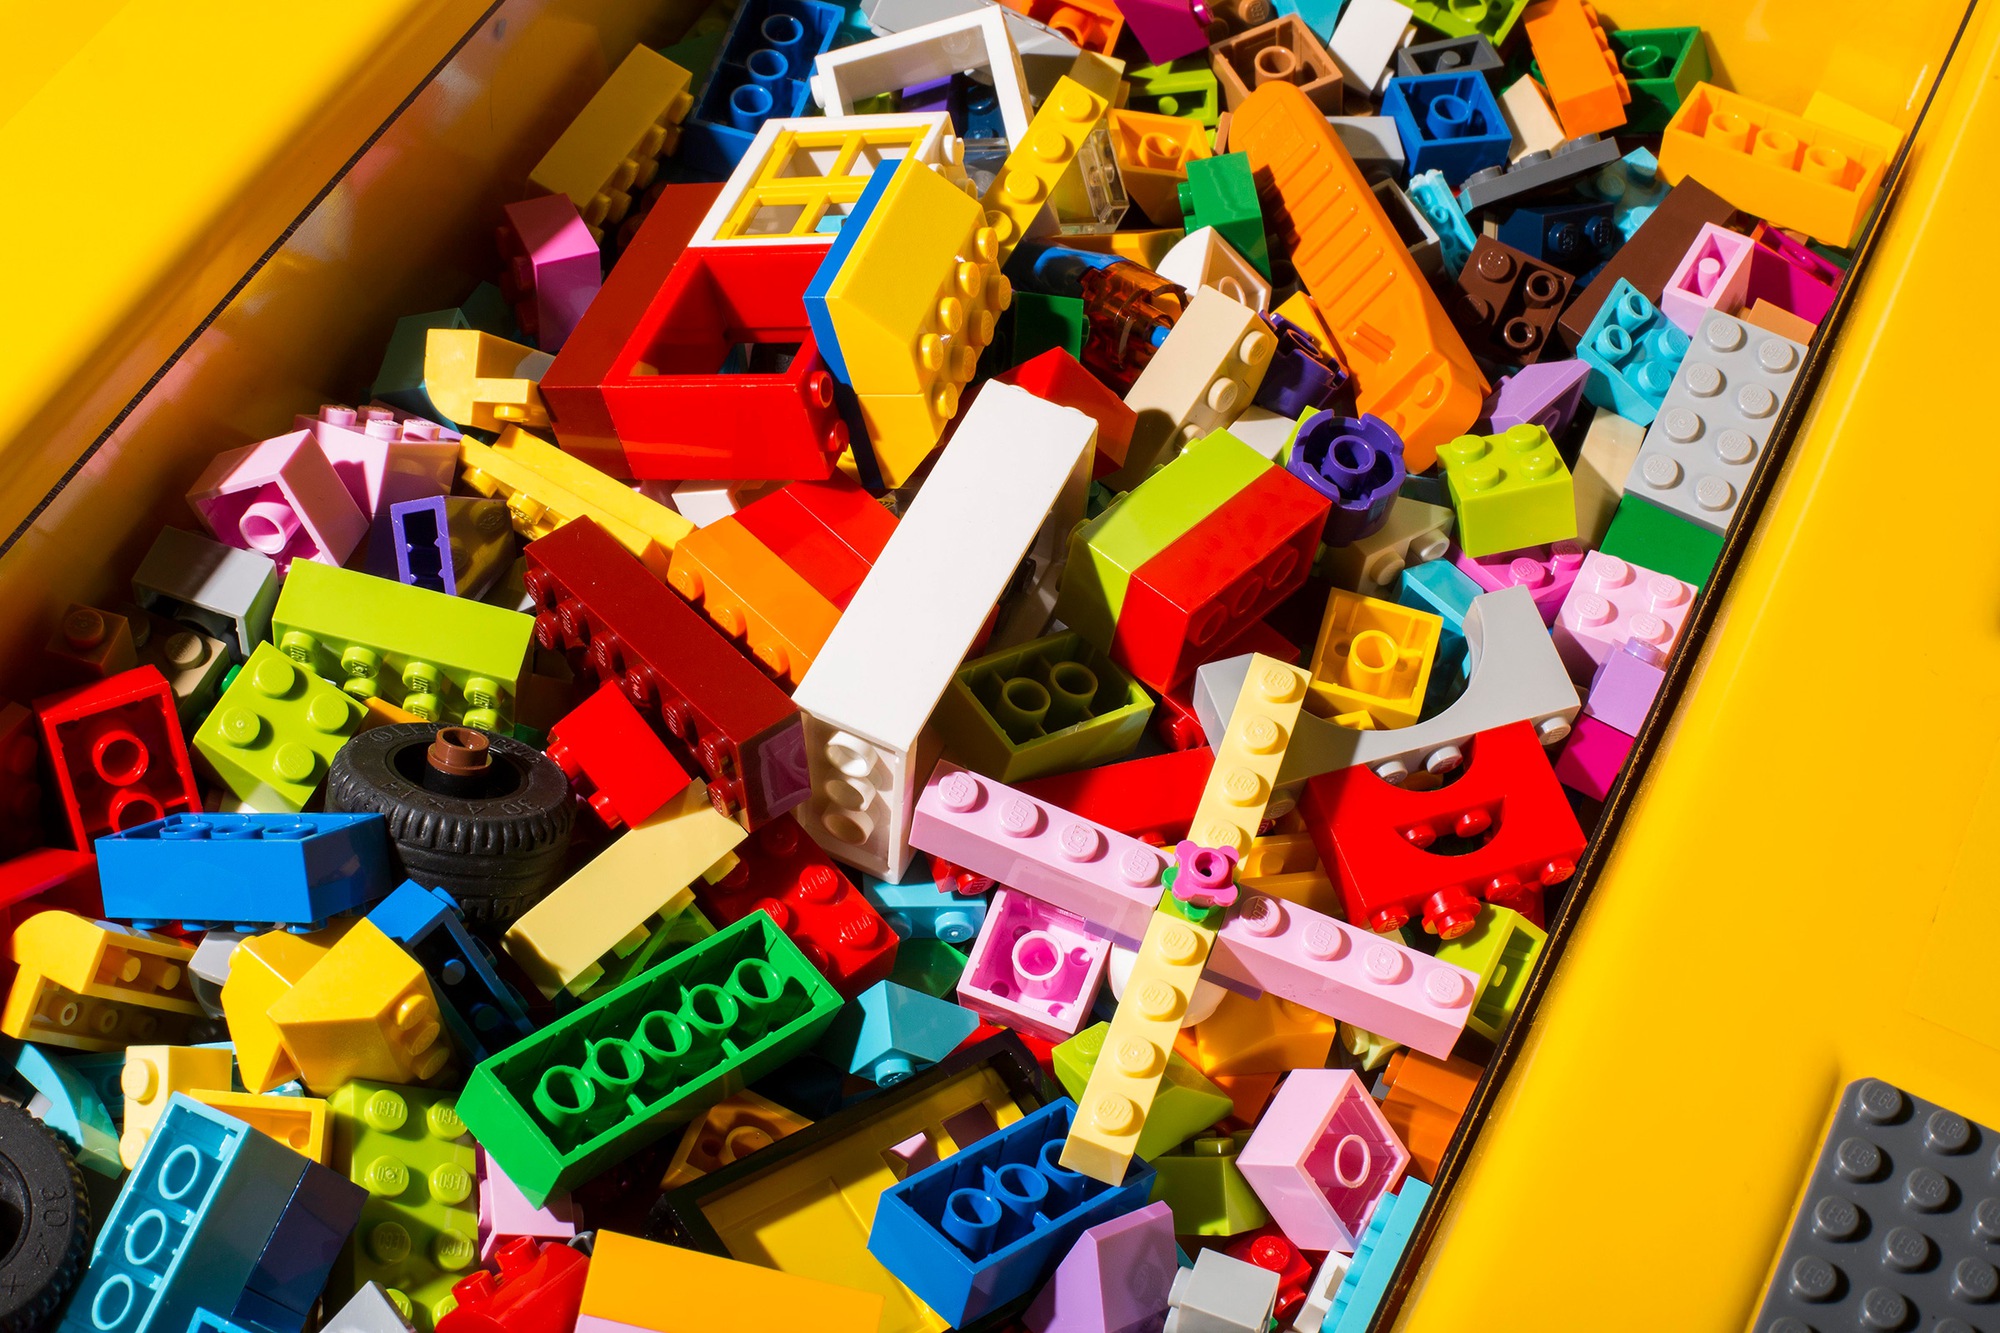 Lego: Từ bờ vực phá sản sang thành công rực rỡ nhờ chuyển đổi số - Ảnh 2.